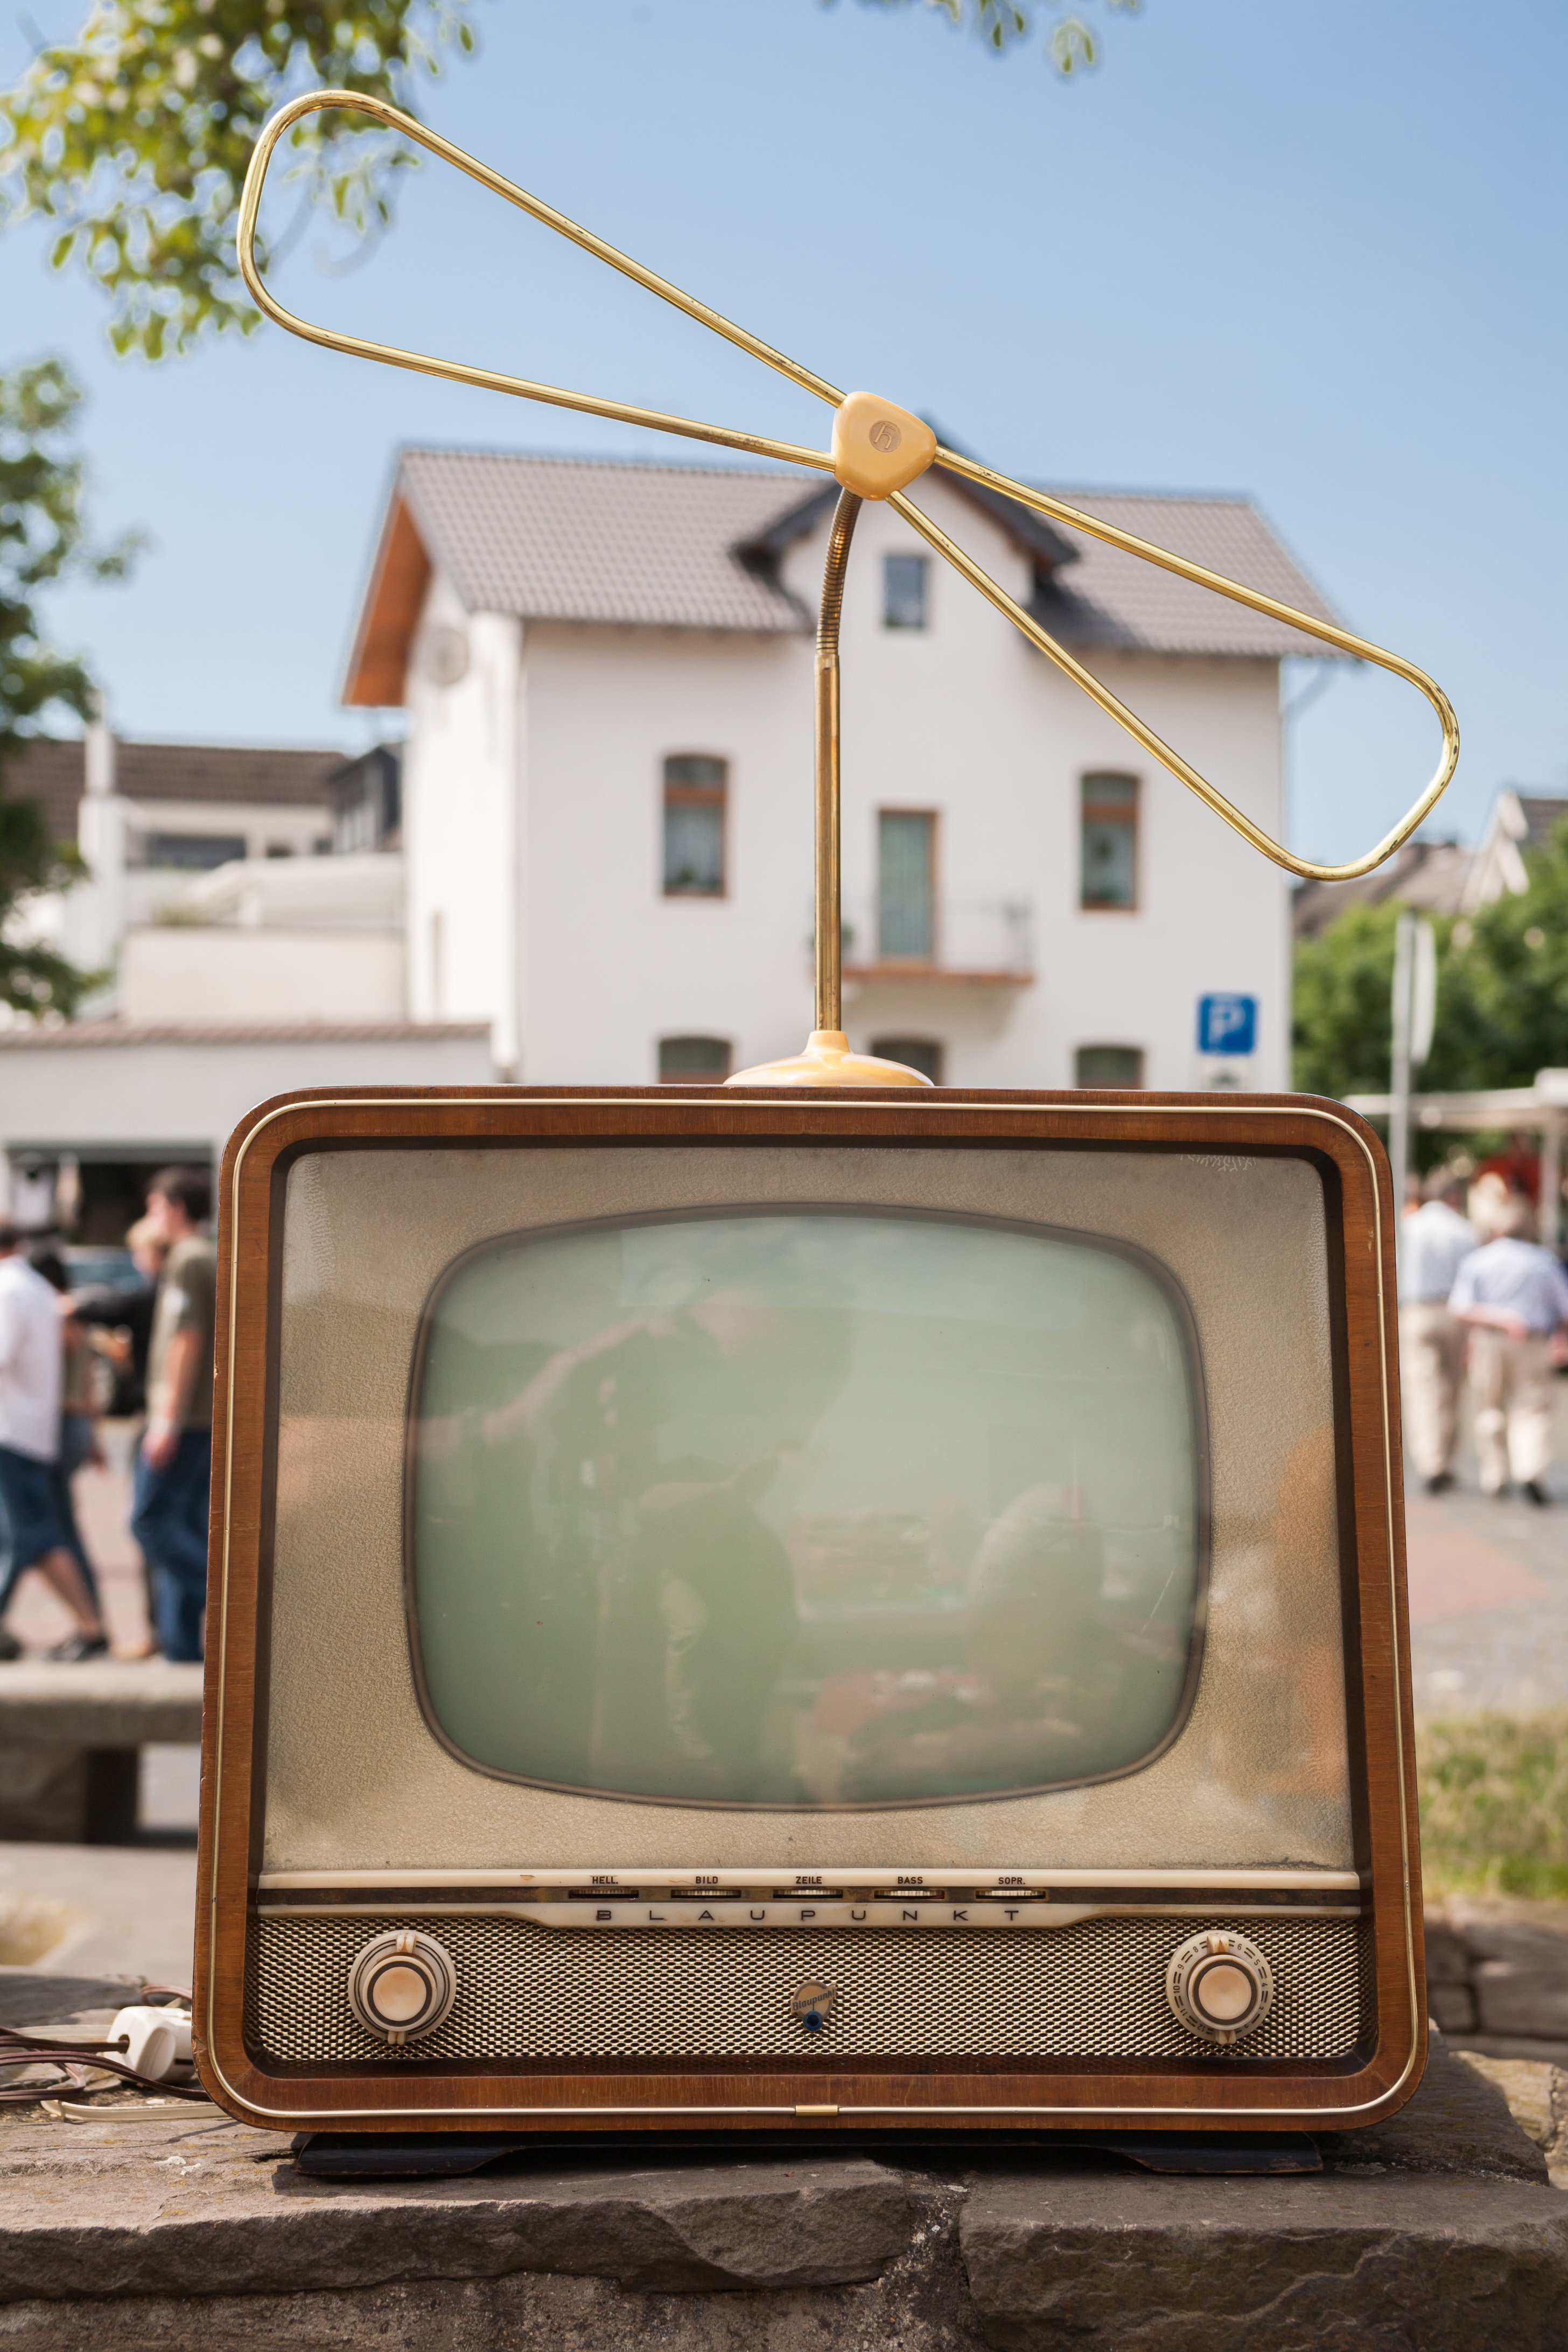 2007-07-15 Auf dem Flohmarkt- Alter Blaupunkt-Fernseher (Modell-) mit Hirschmann „Zifa 100“ (Zimmer-Fernseh-Antenne), Beiname „Libelle“, Baujahr ca. 1957 IMG 2952